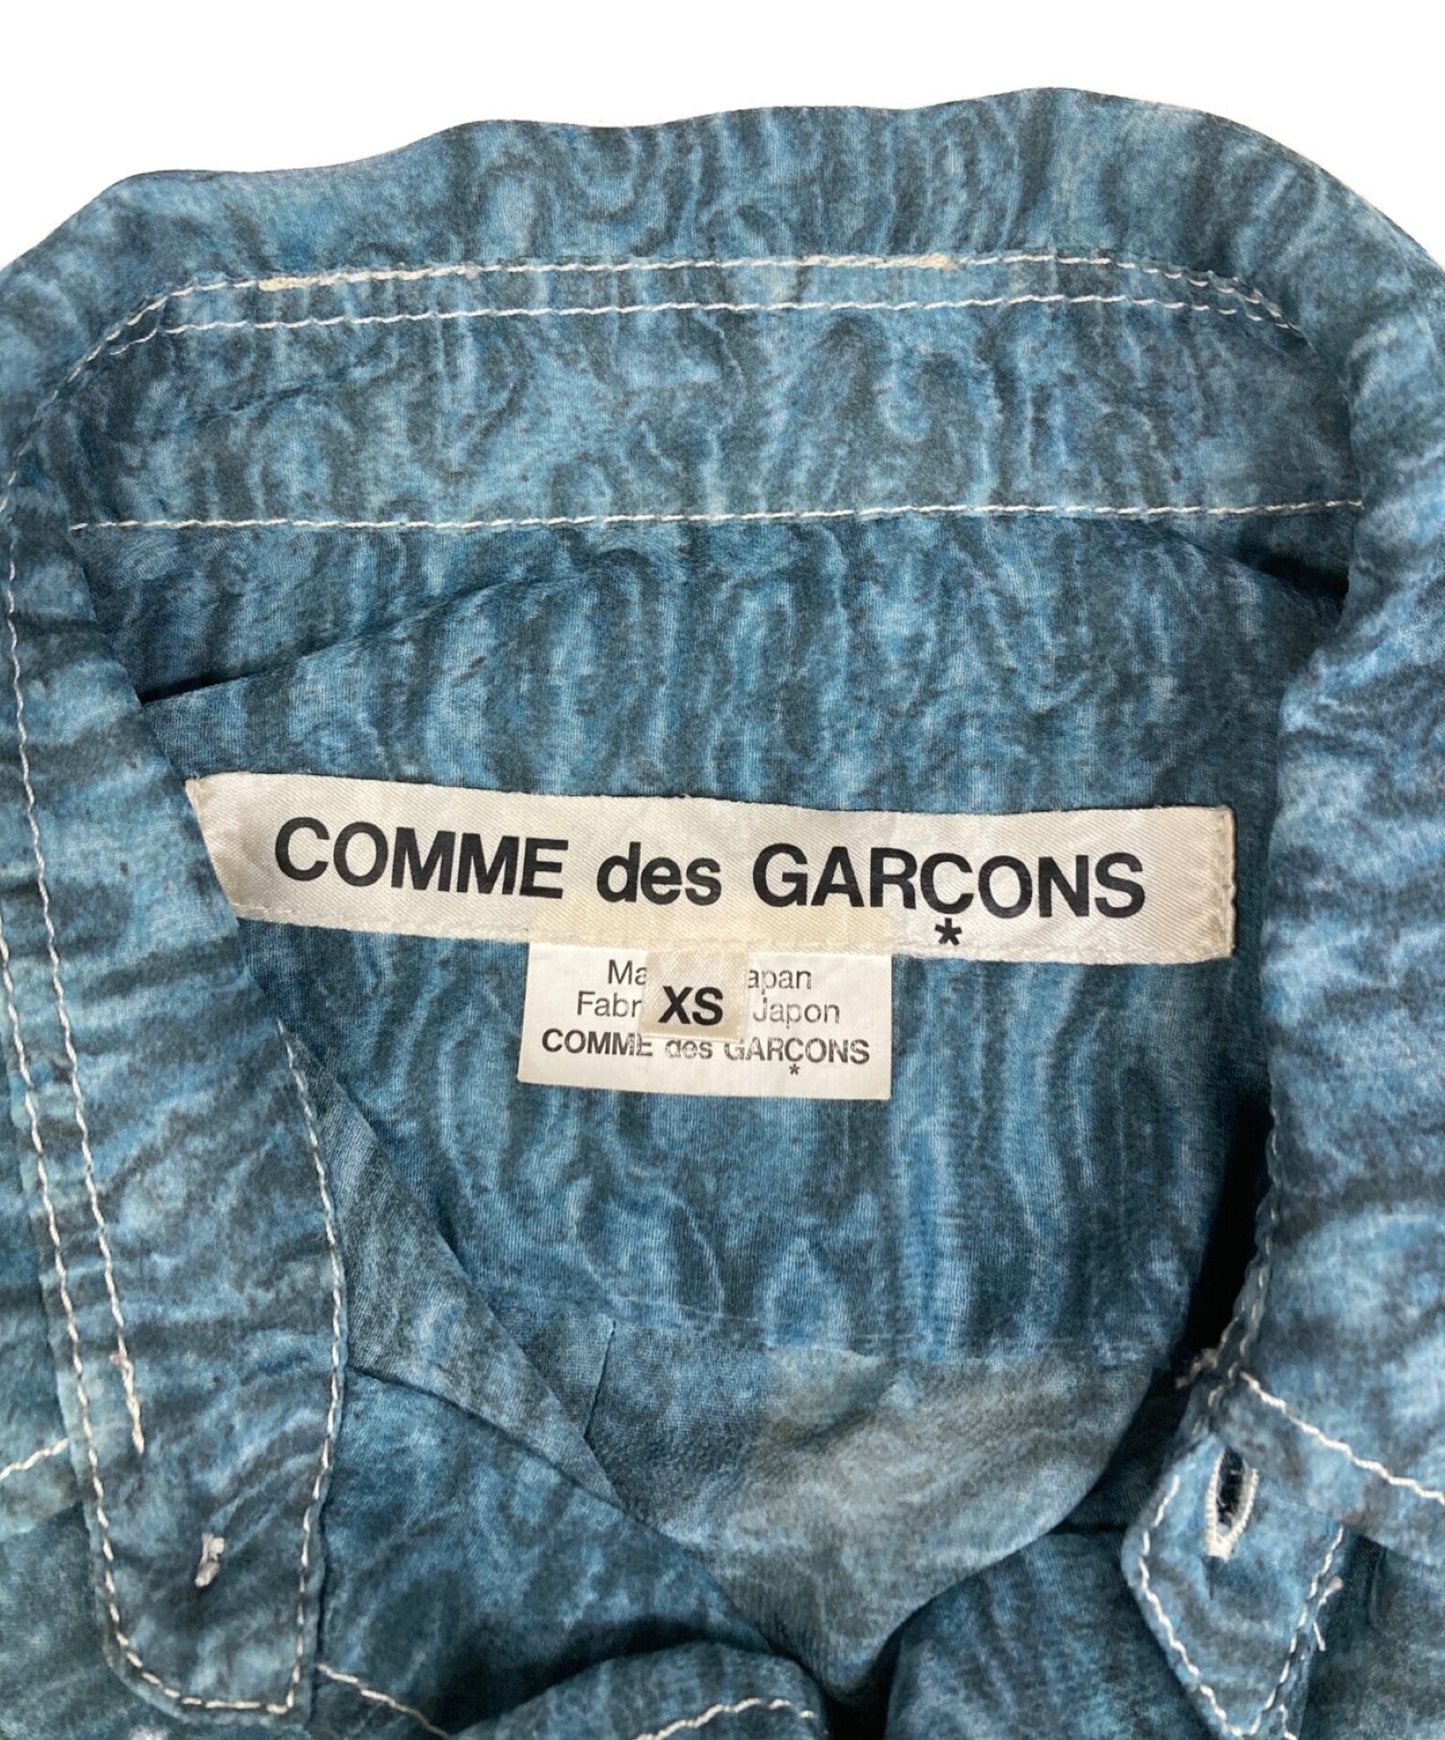 Comme des Garcons透明的全面图案衬衫，带有口袋开关人造皮毛袖珍衬衫GQ-B003